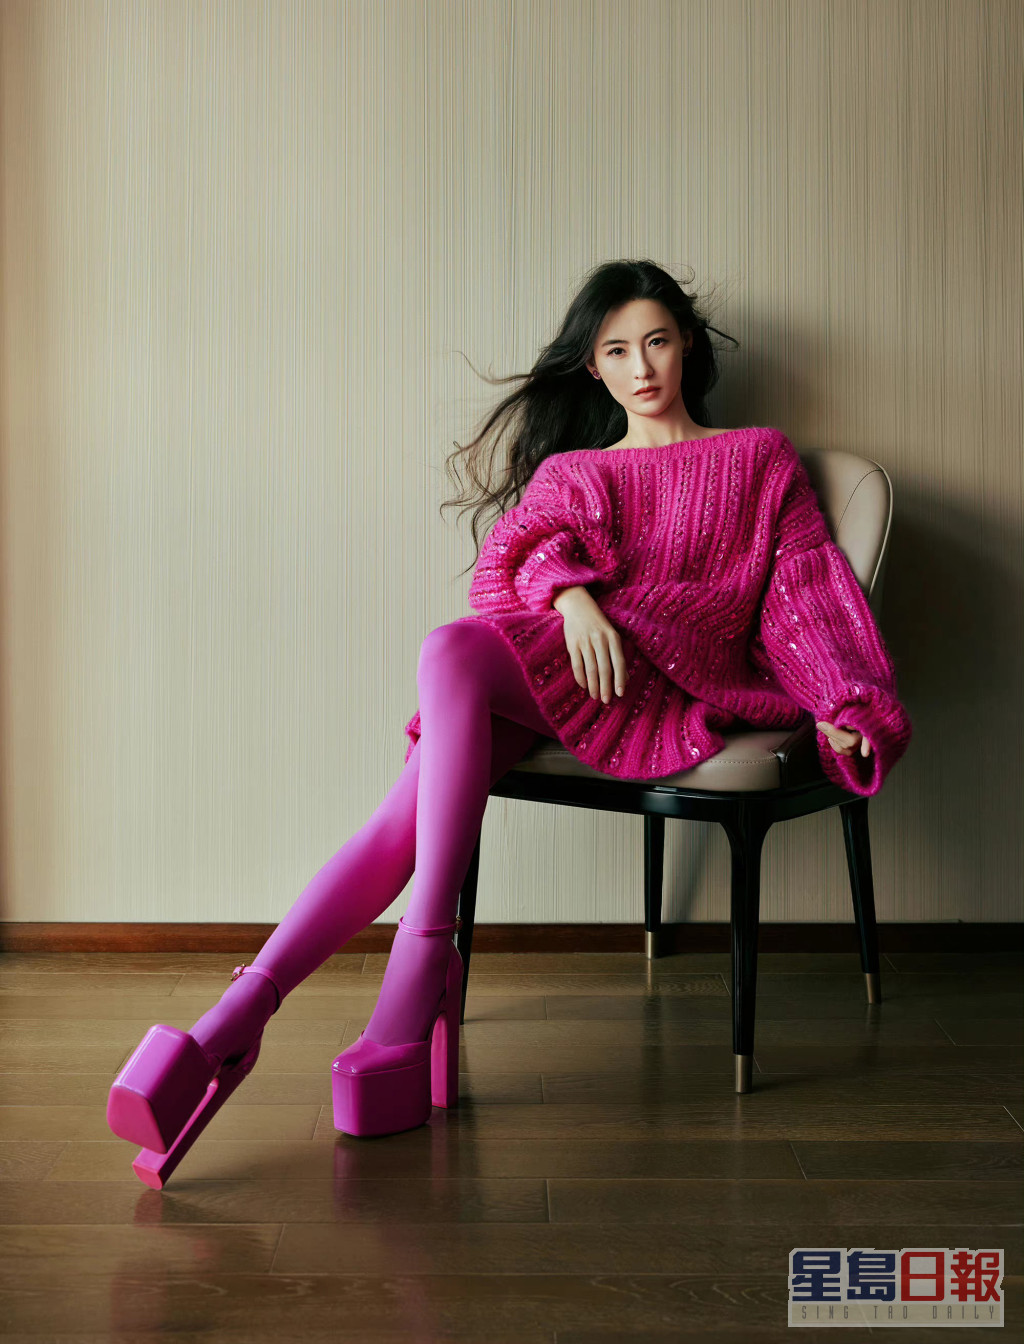 其实张栢芝所着的是Valentino Pink PP Collection今季最新款。